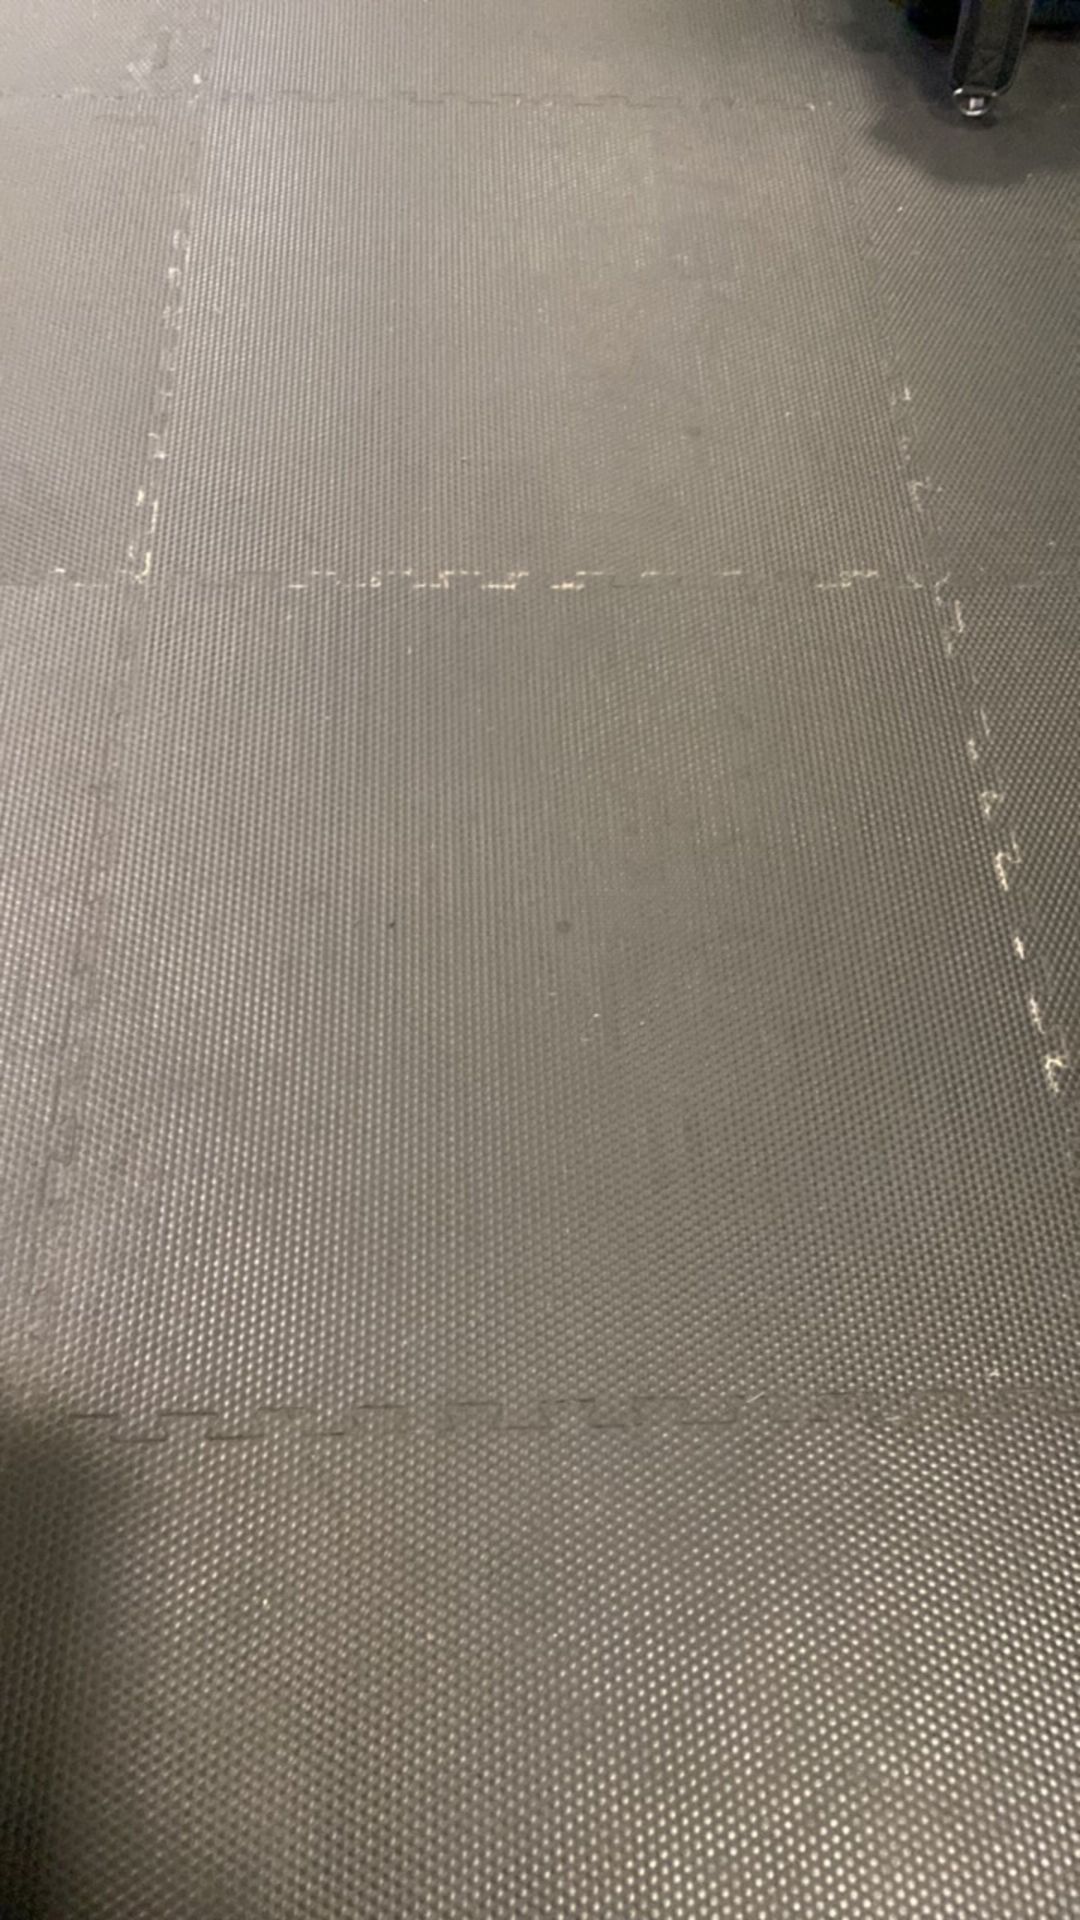 10x Gym matt flooring tiles